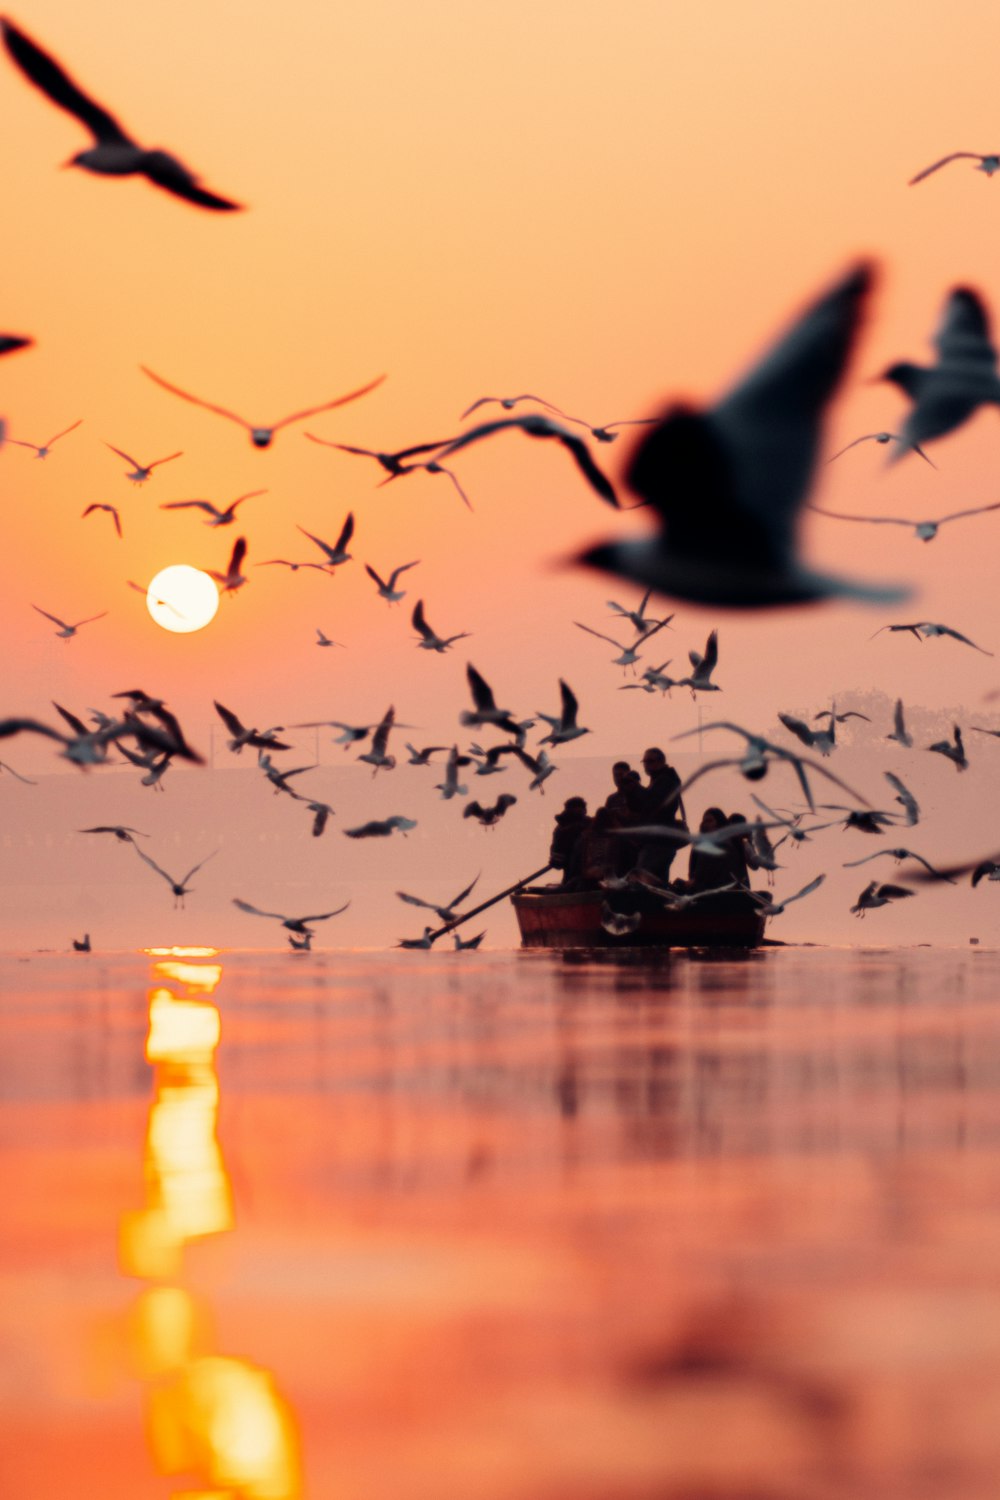 Ein Vogelschwarm fliegt über ein Boot im Ozean